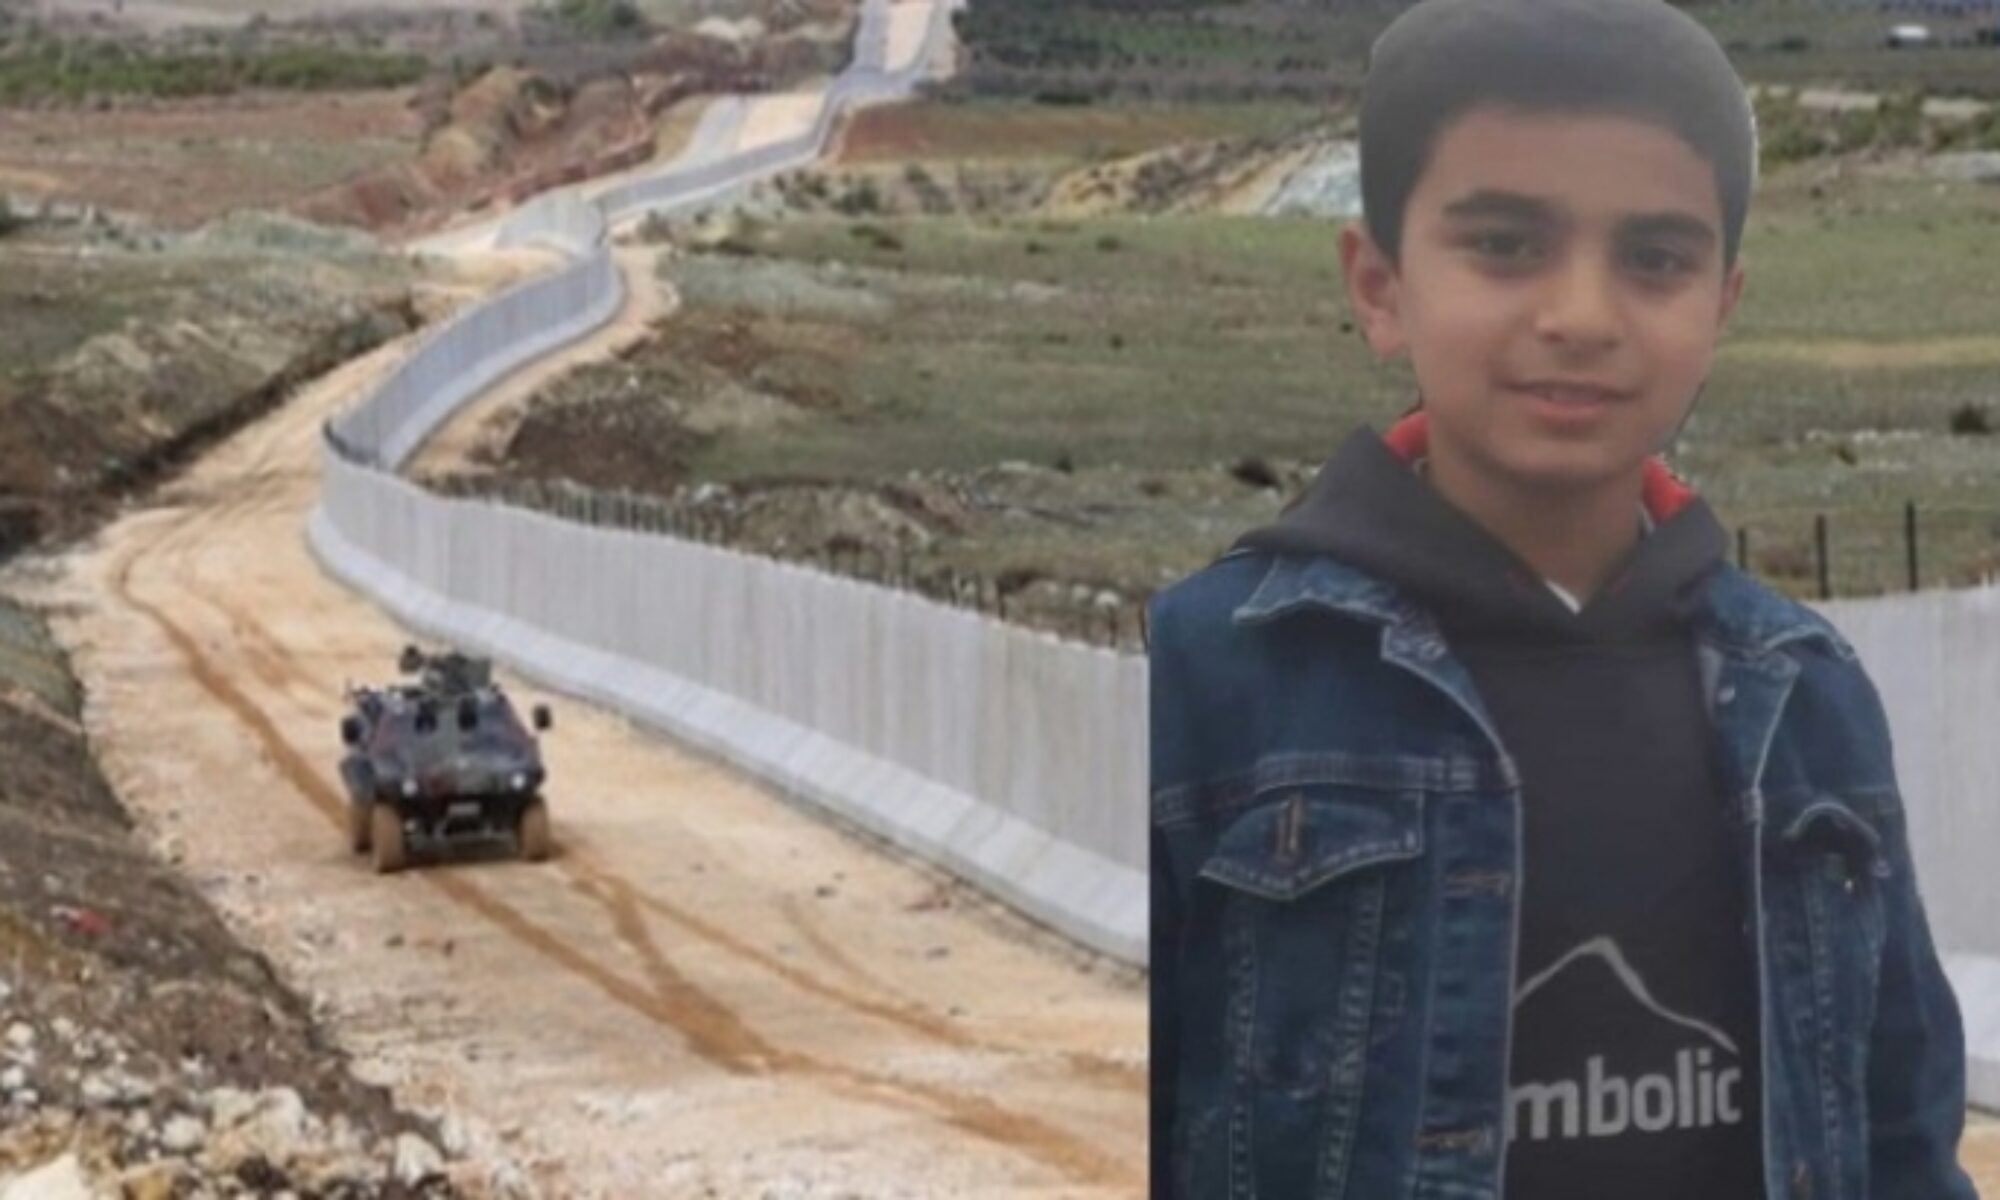 Bir çocuk daha Türk mermilerinin kurbanı oldu